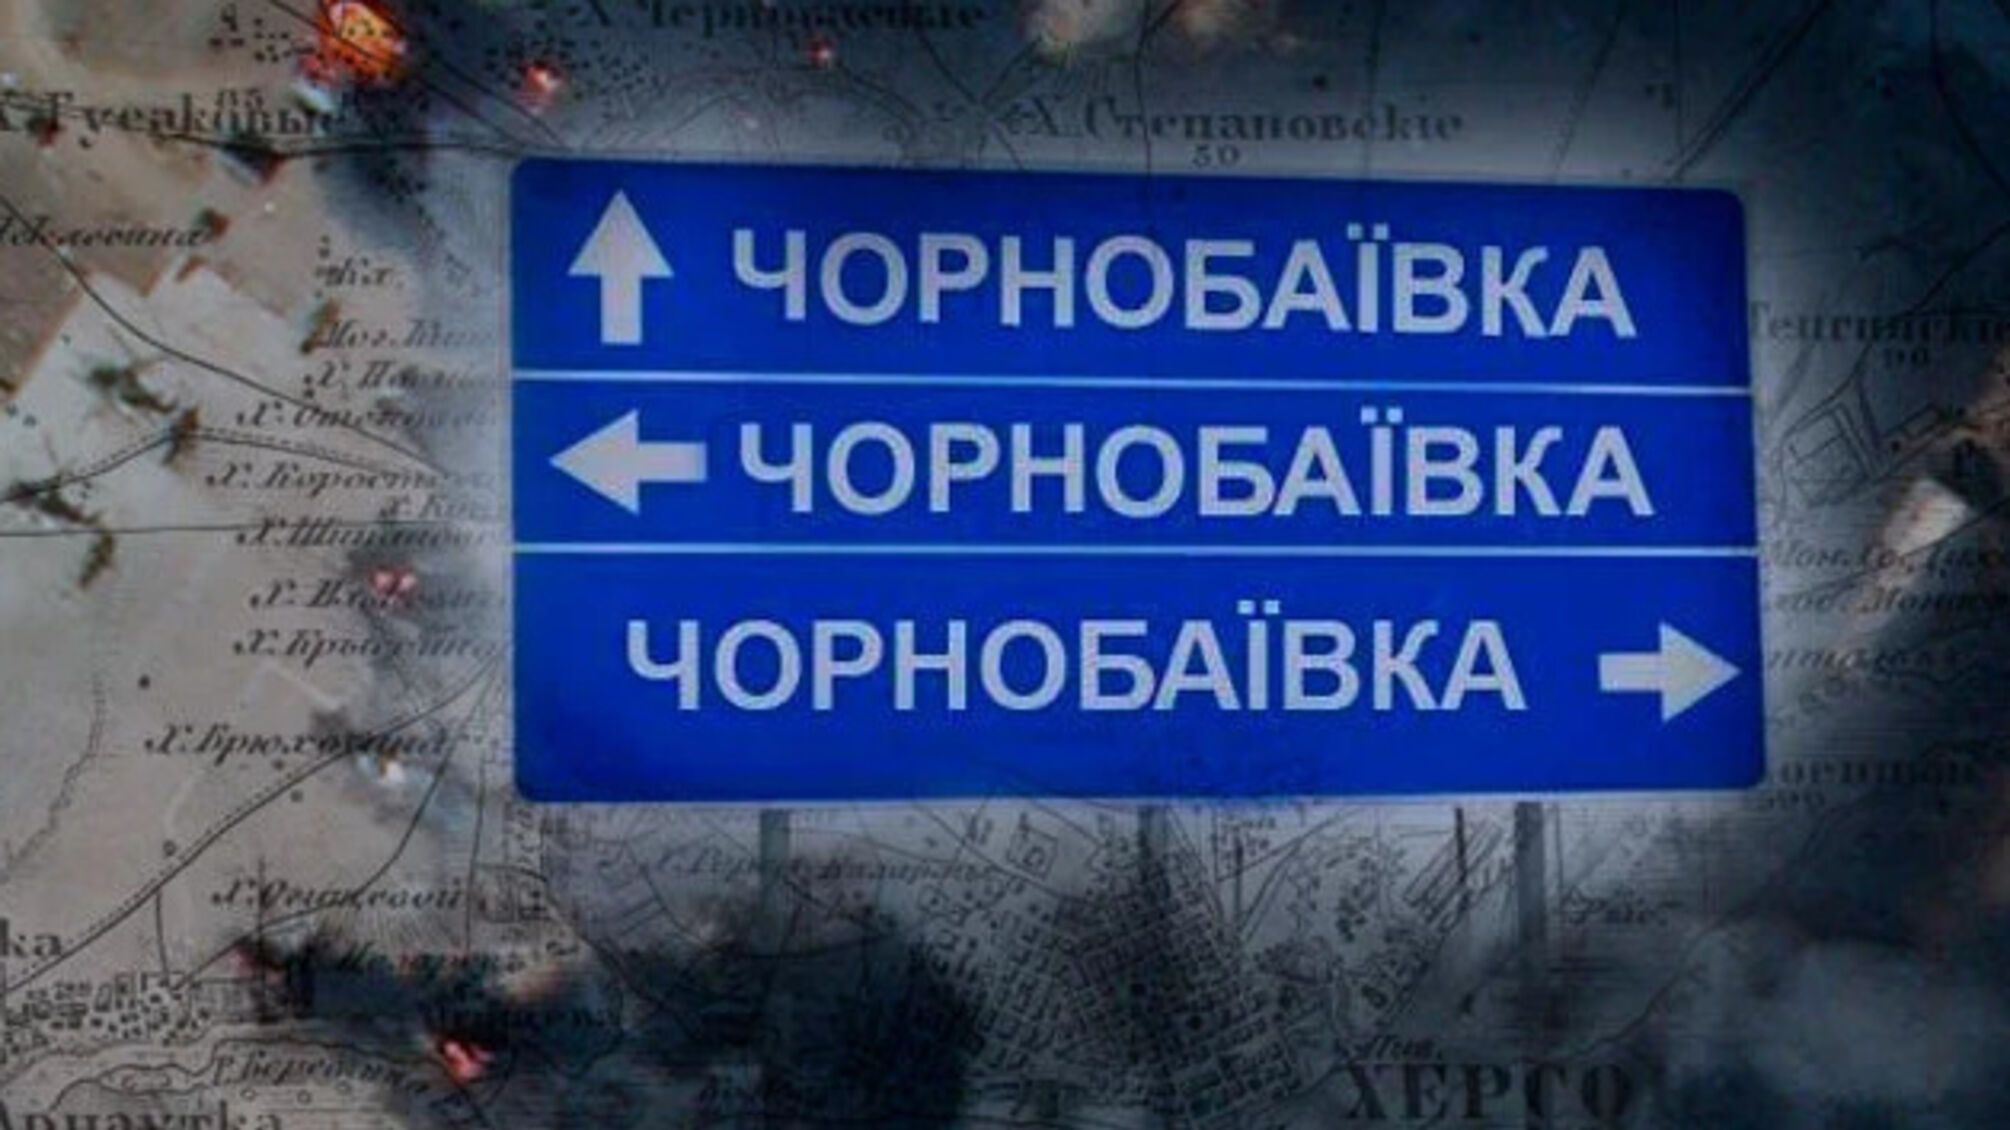 Жителей Чернобаевки предостерегают о боях: появились листовки с предупреждением (фото)